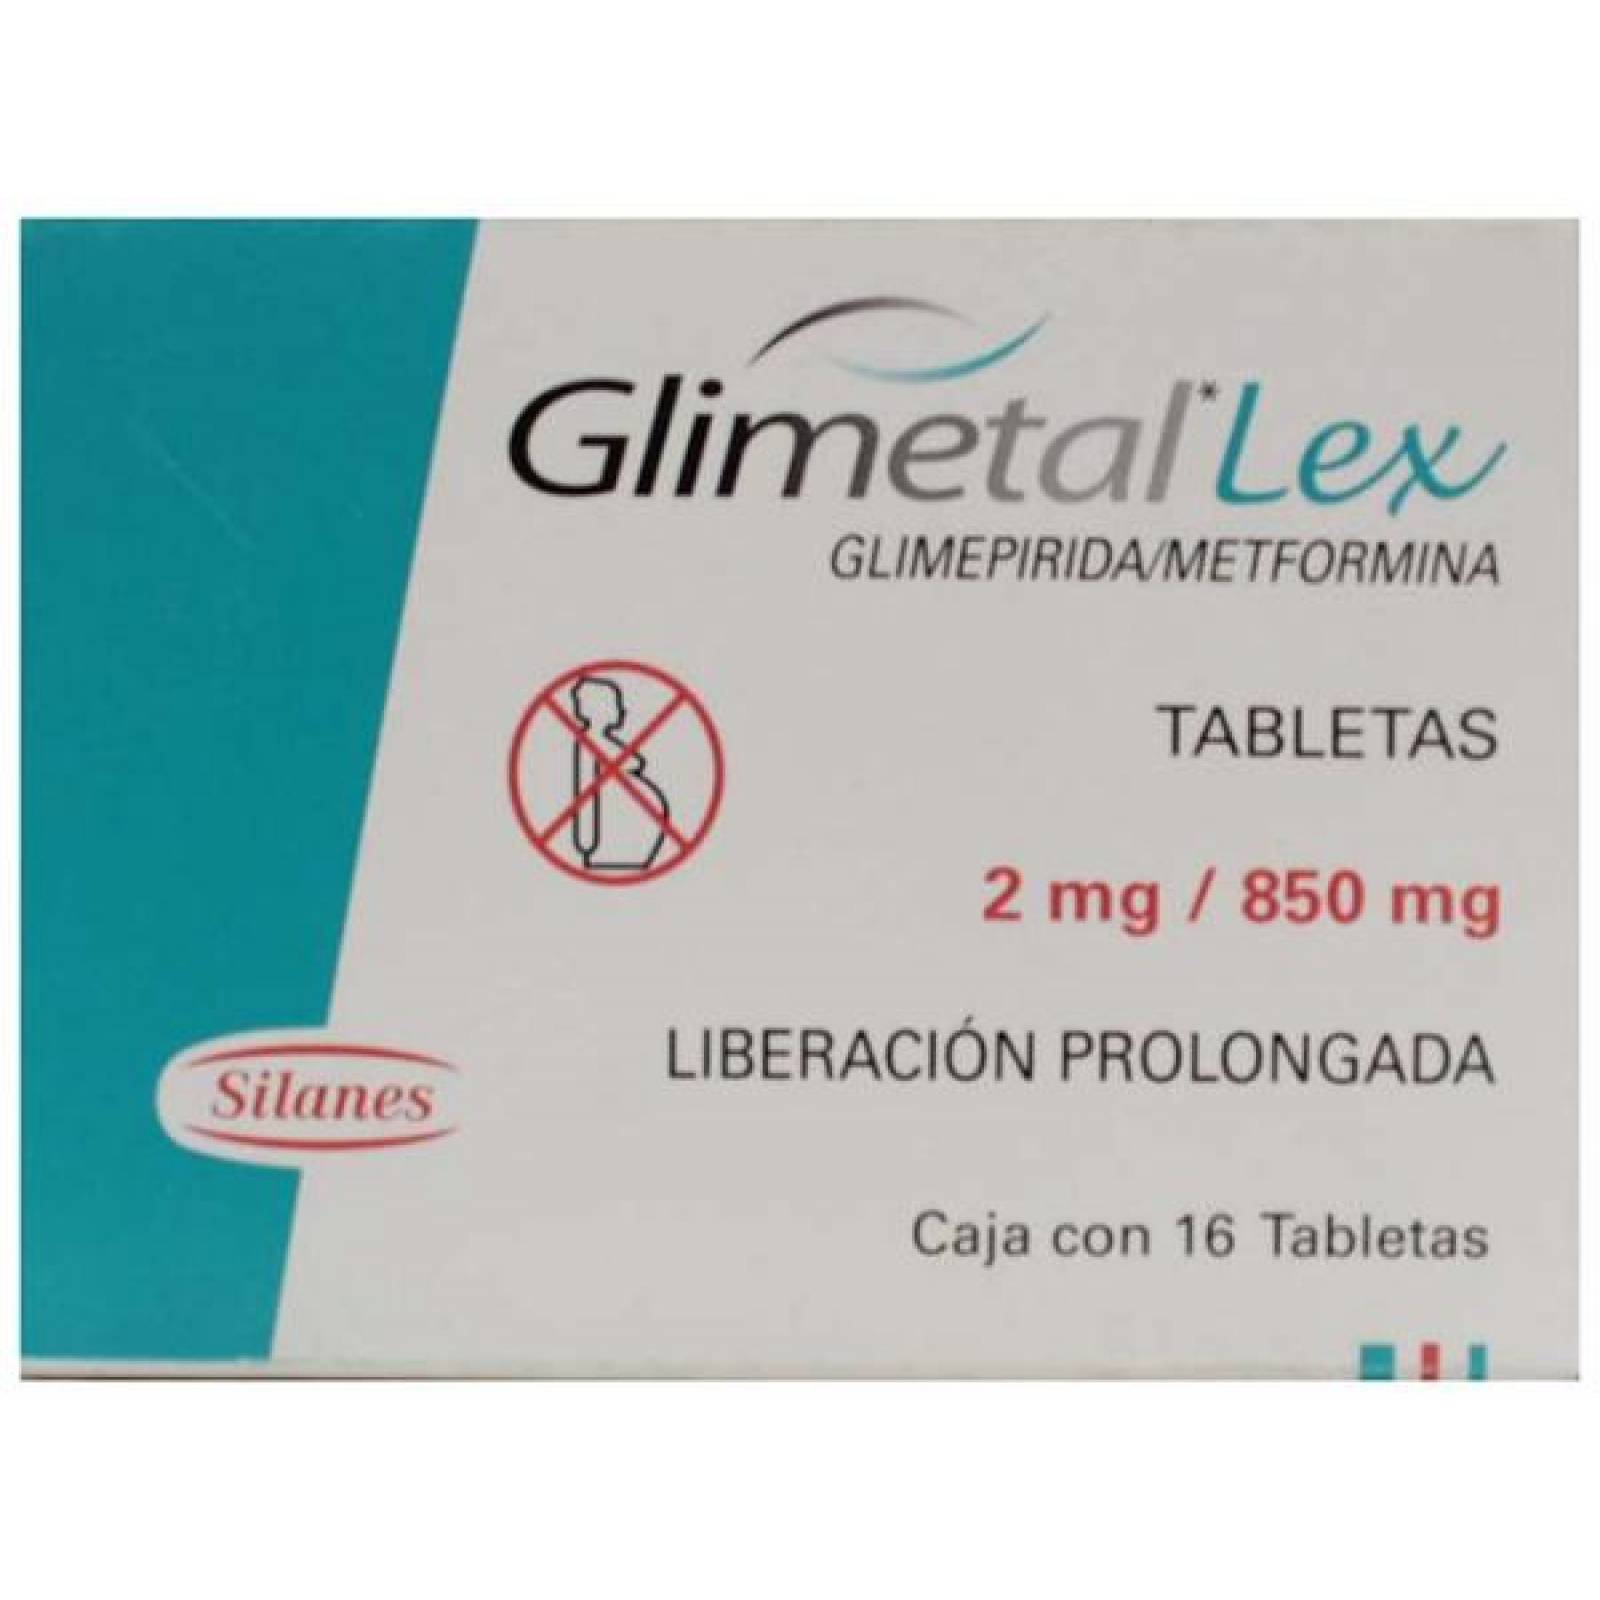 GLIMETAL LEX 16 TABLETAS 2MG/850MG